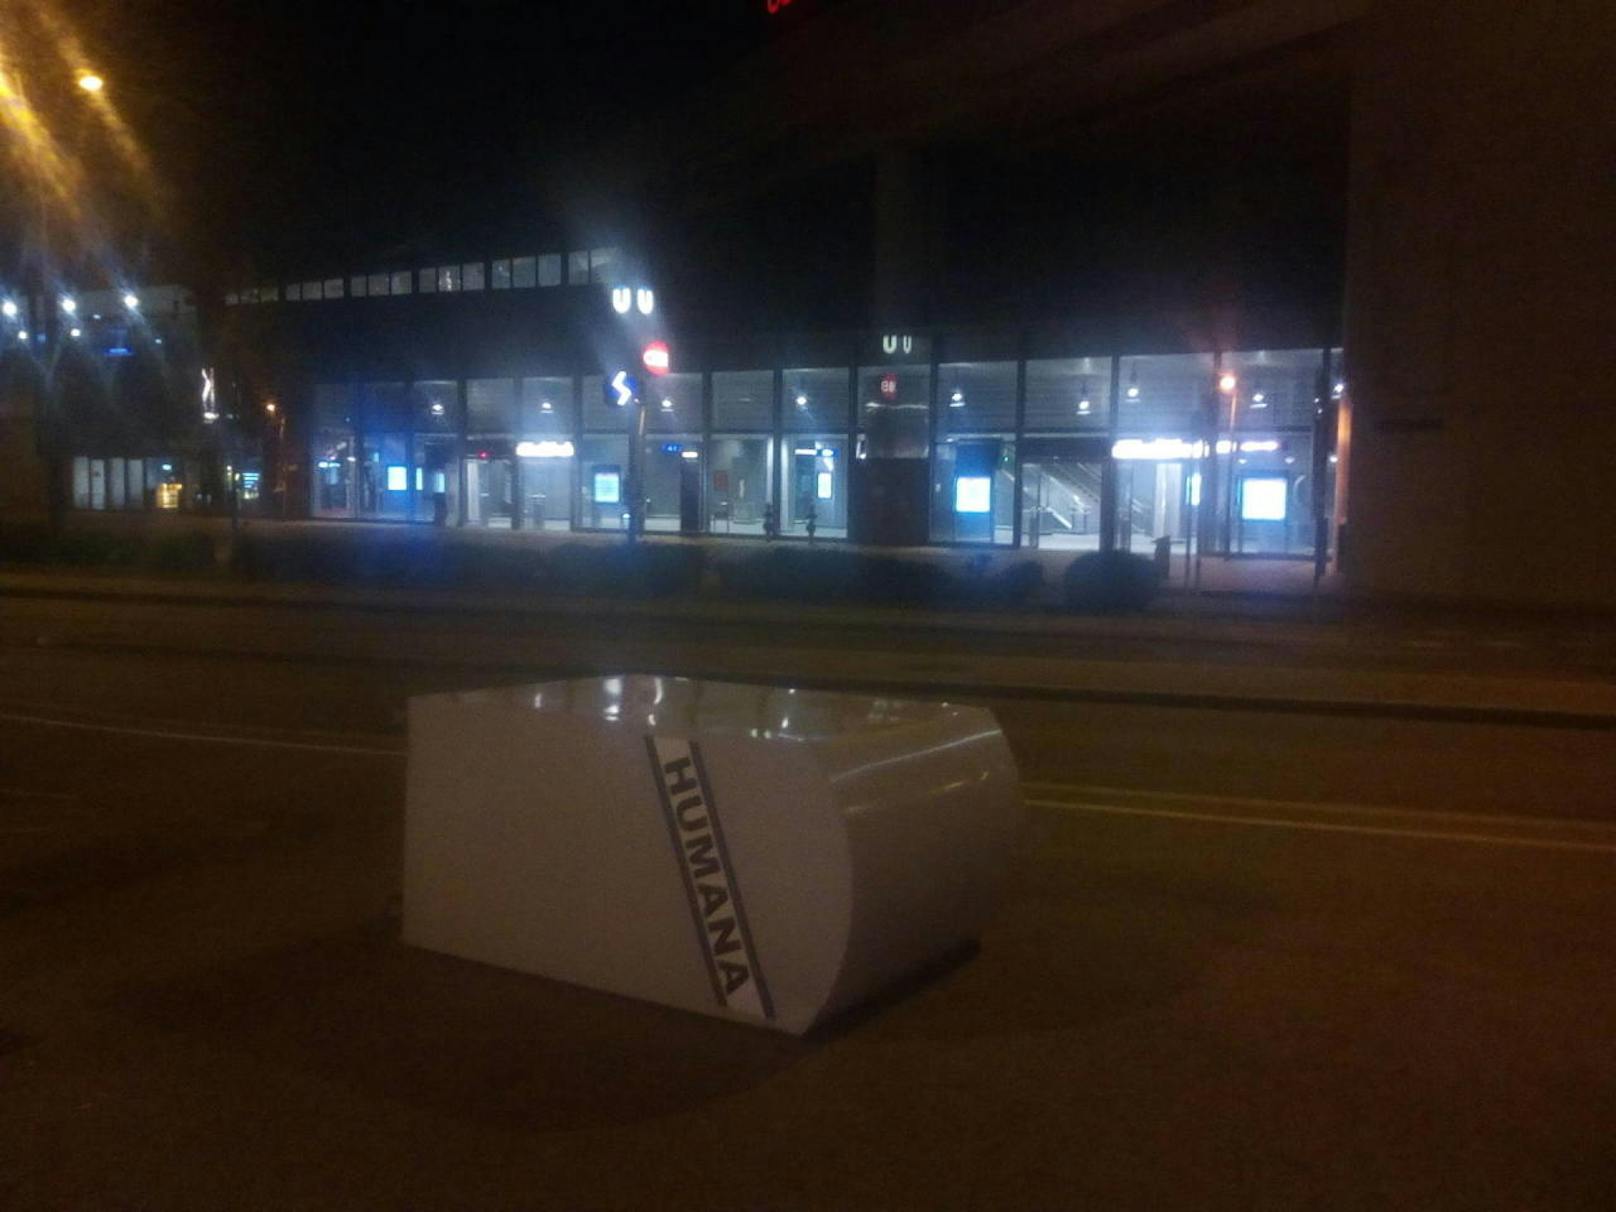 U-Bahnstation in Wien: Bei der U2-Station Stadlau fiel ein Humana-Container um.